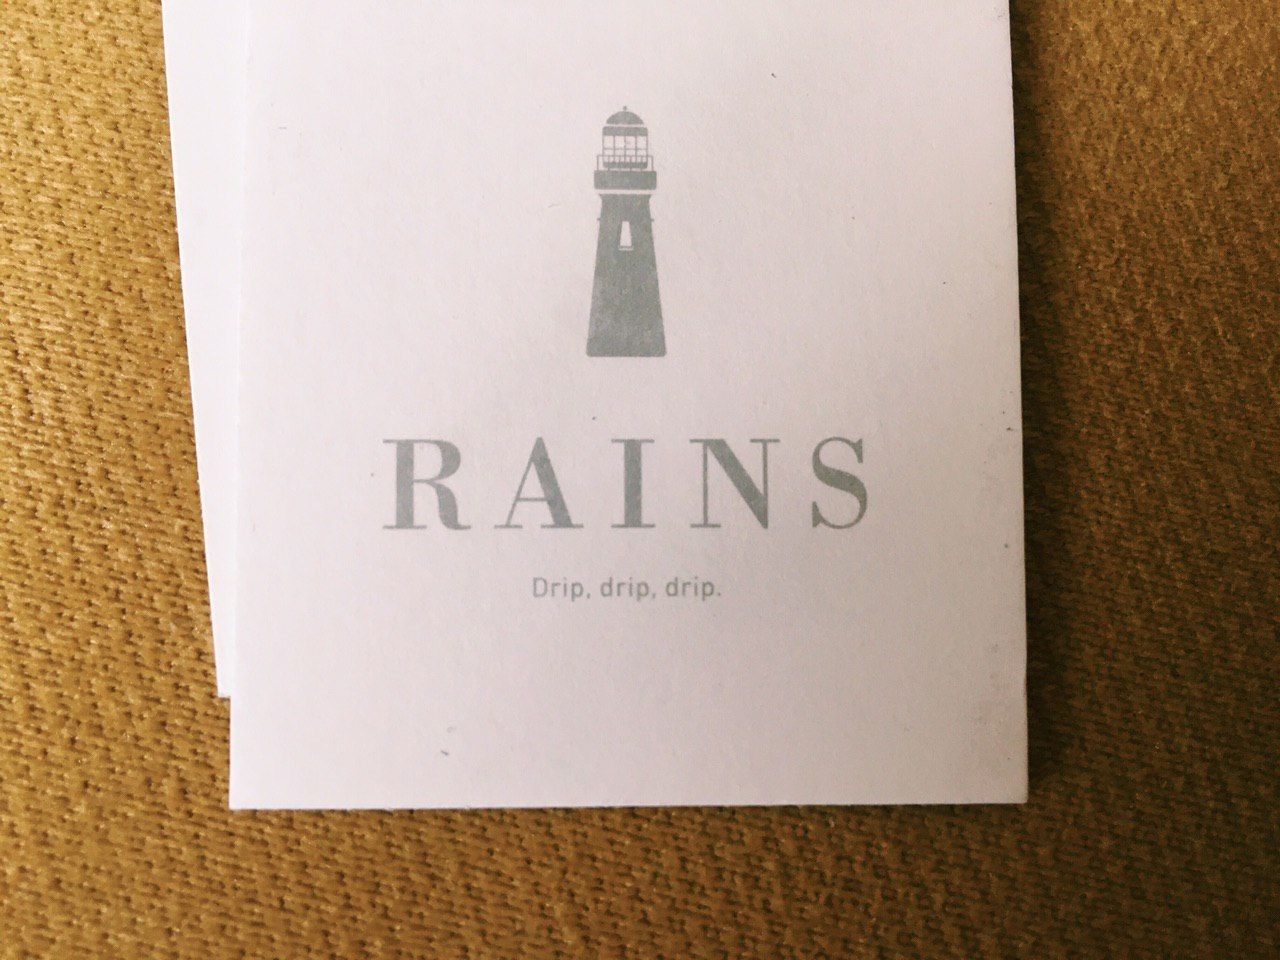 Простой, но запоминающийся слоган бренда Rains.